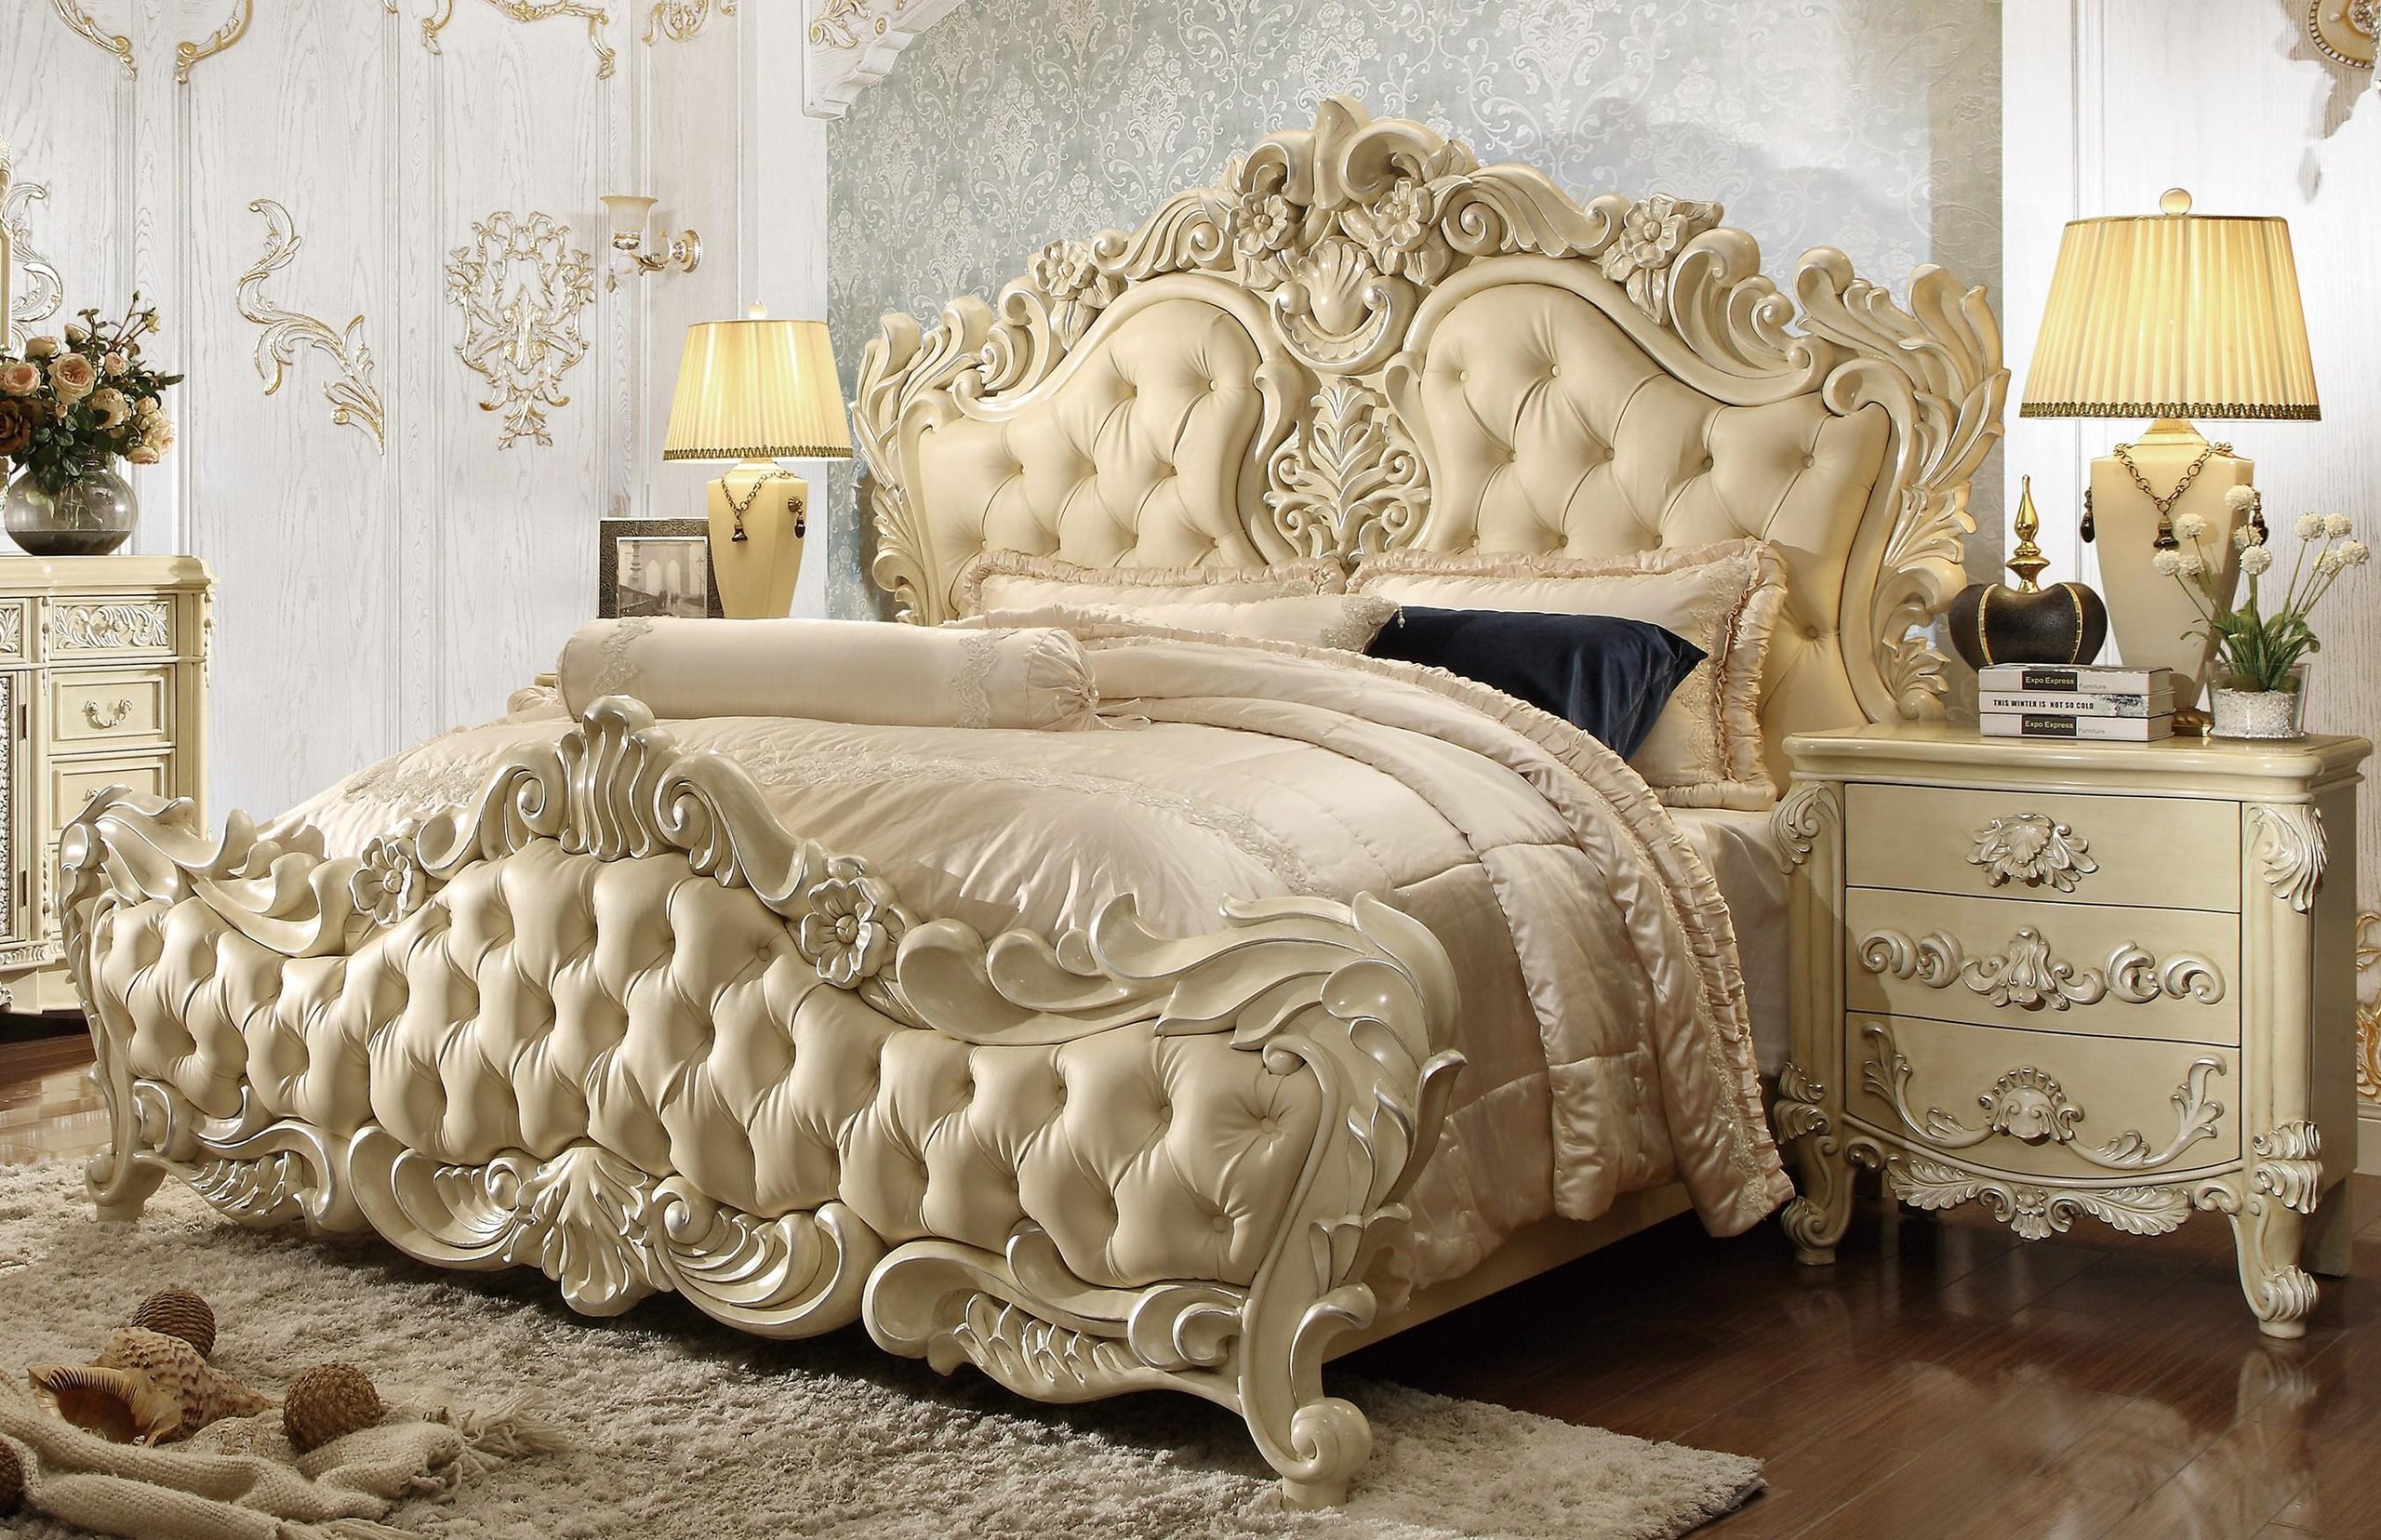 Мебель в стиле рококо для спальни